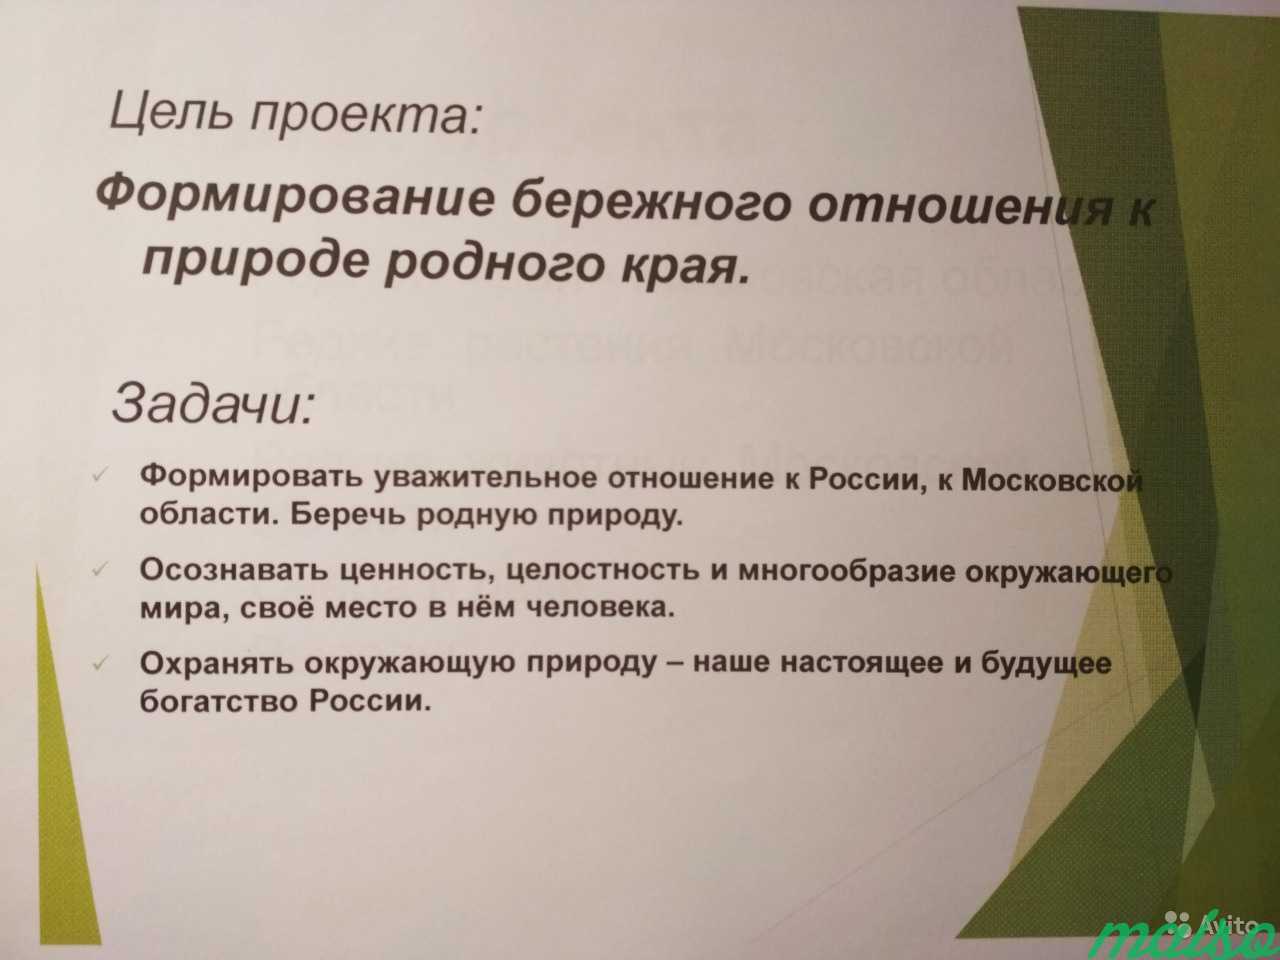 Презентациии и проекты школьникам 1-8 класс в Москве. Фото 3